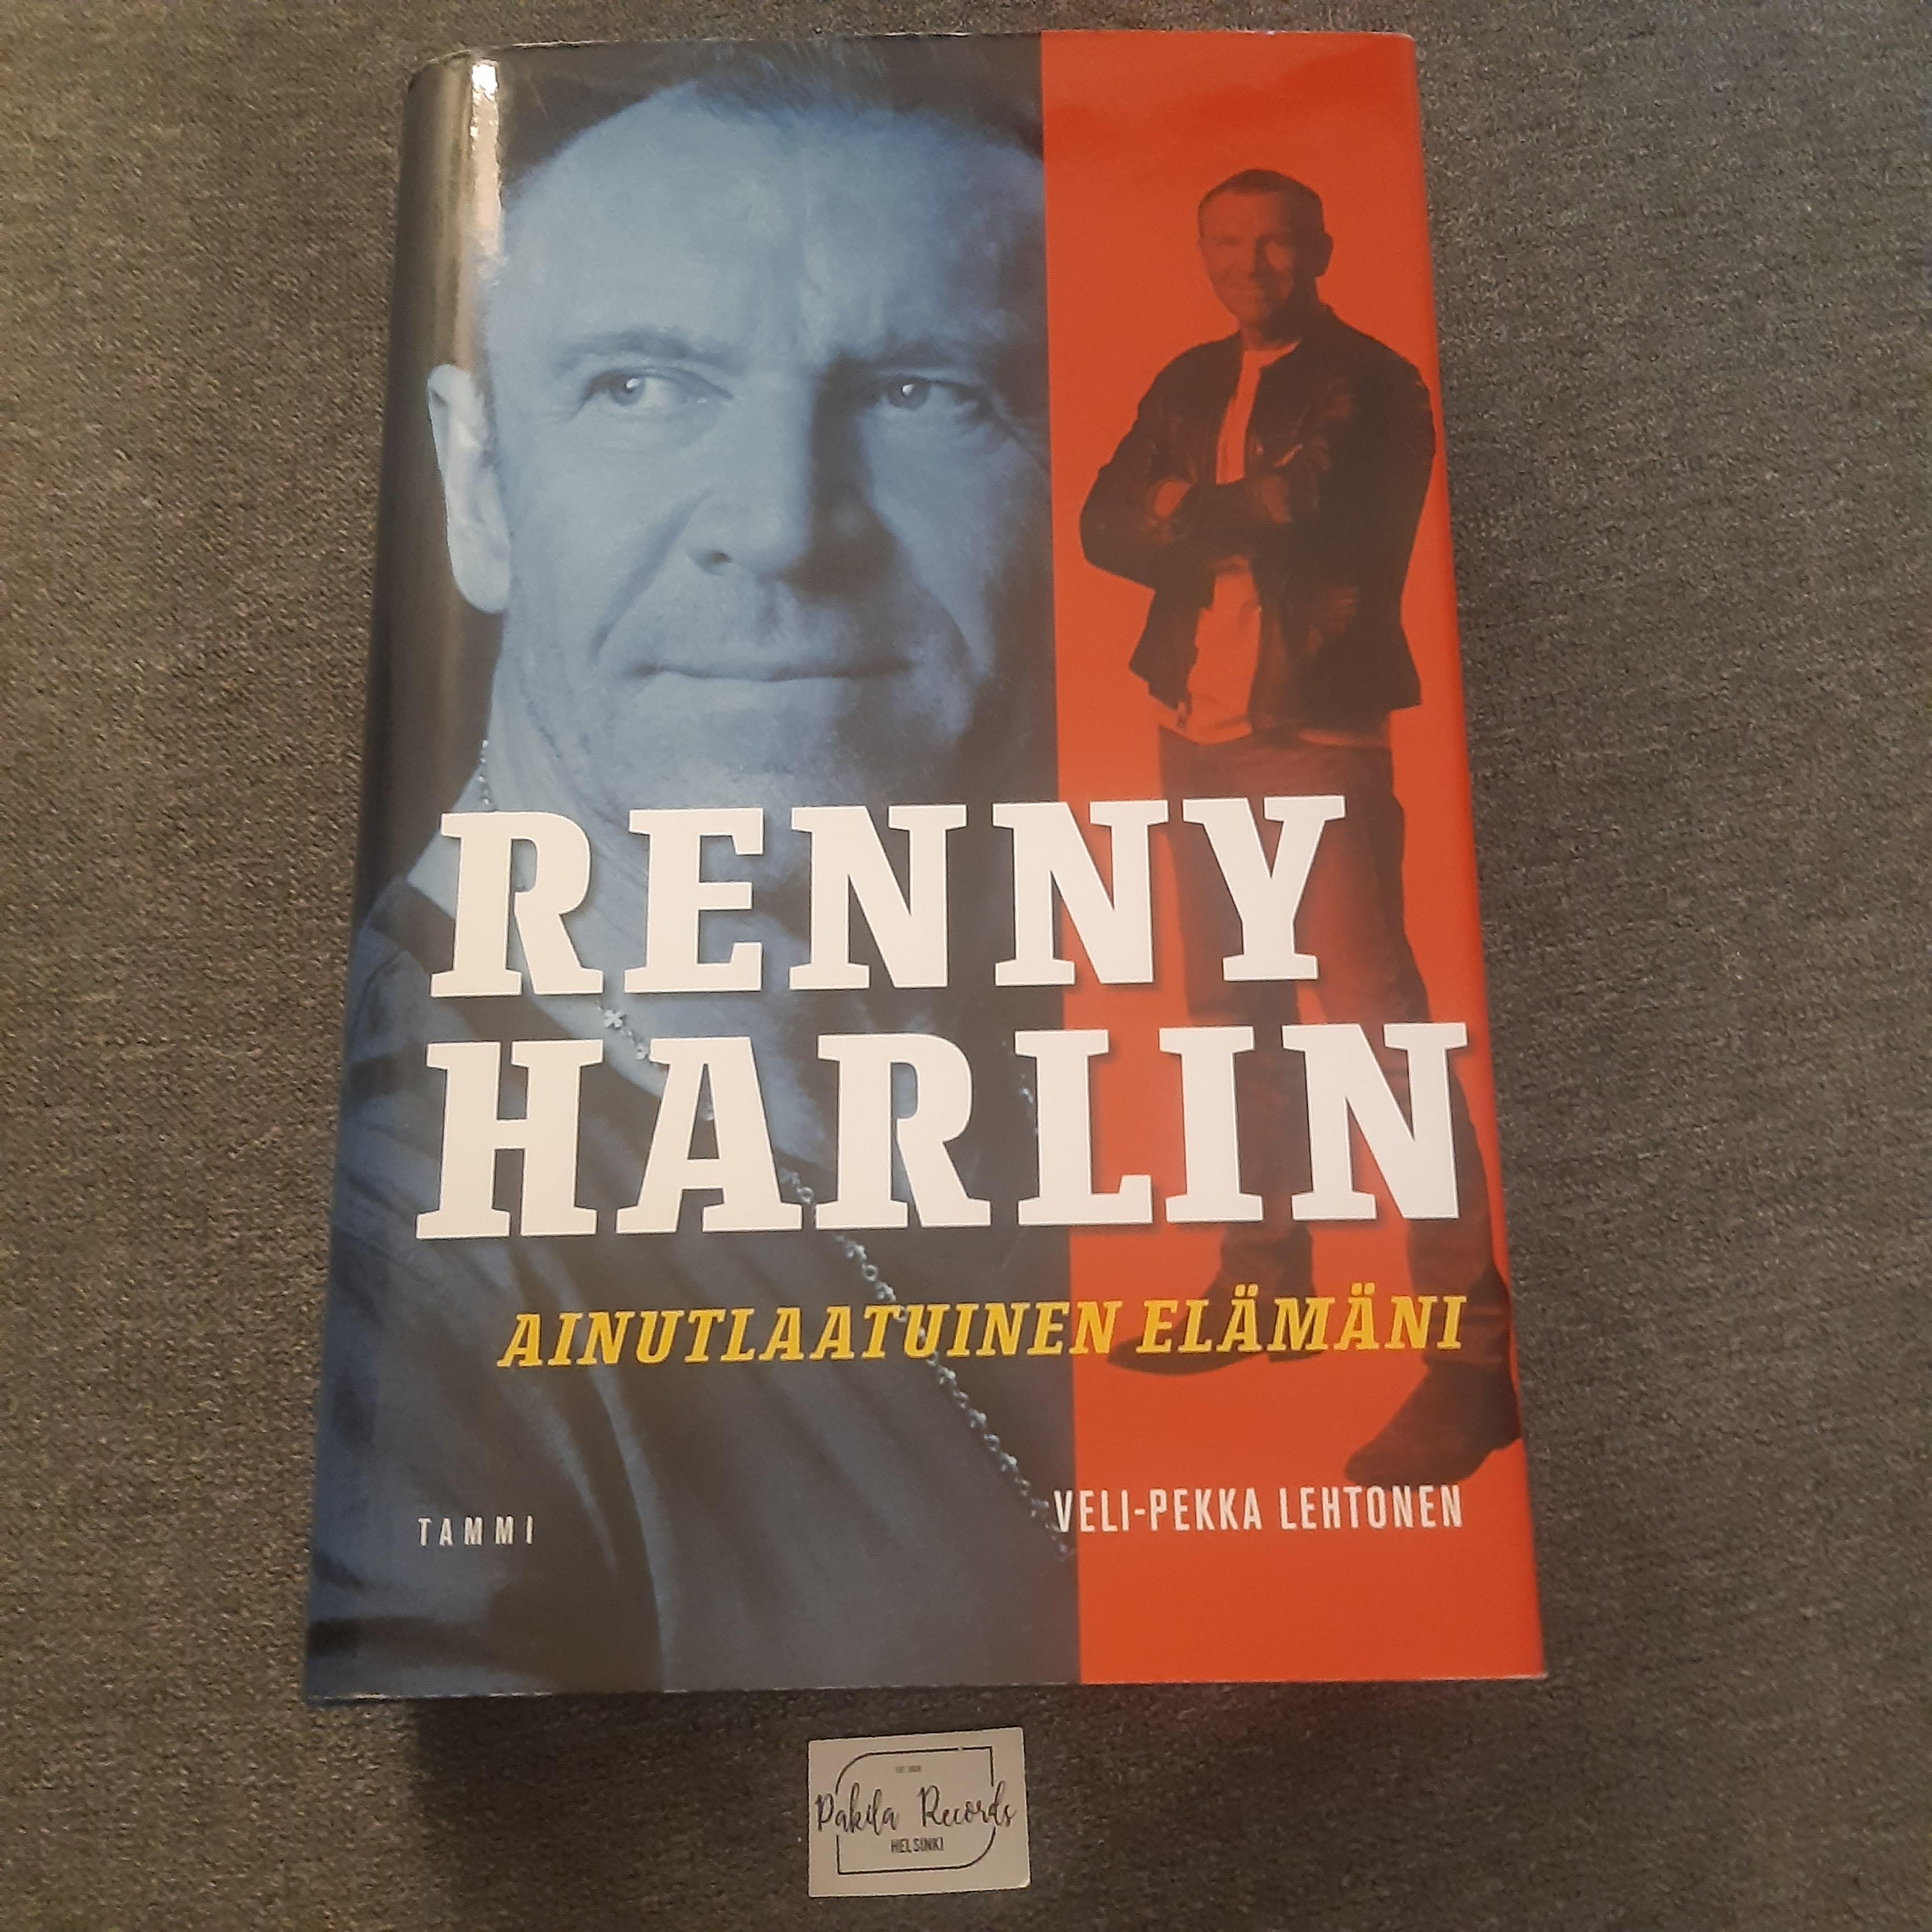 Renny Harlin, Ainutlaatuinen elämäni - Veli-Pekka Lehtonen - Kirja (käytetty)